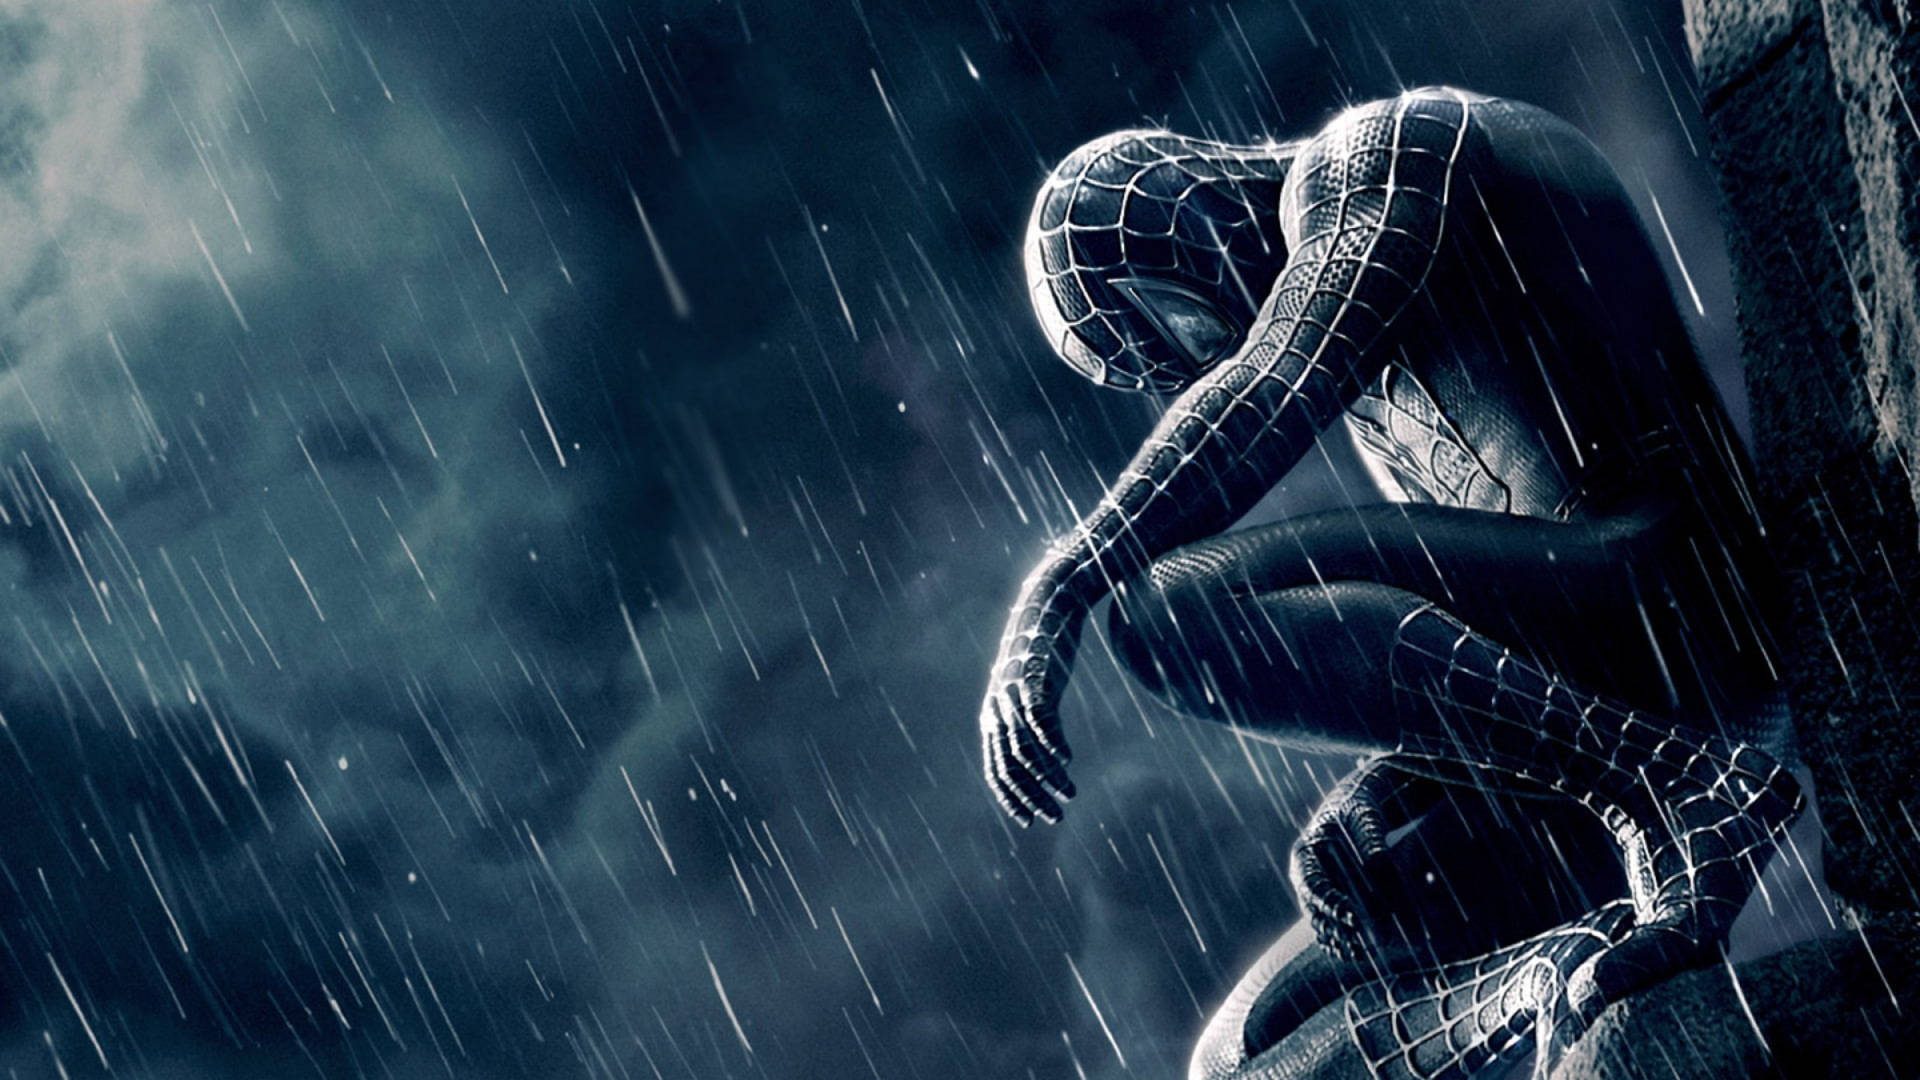 Spider-man Movie Cover Background